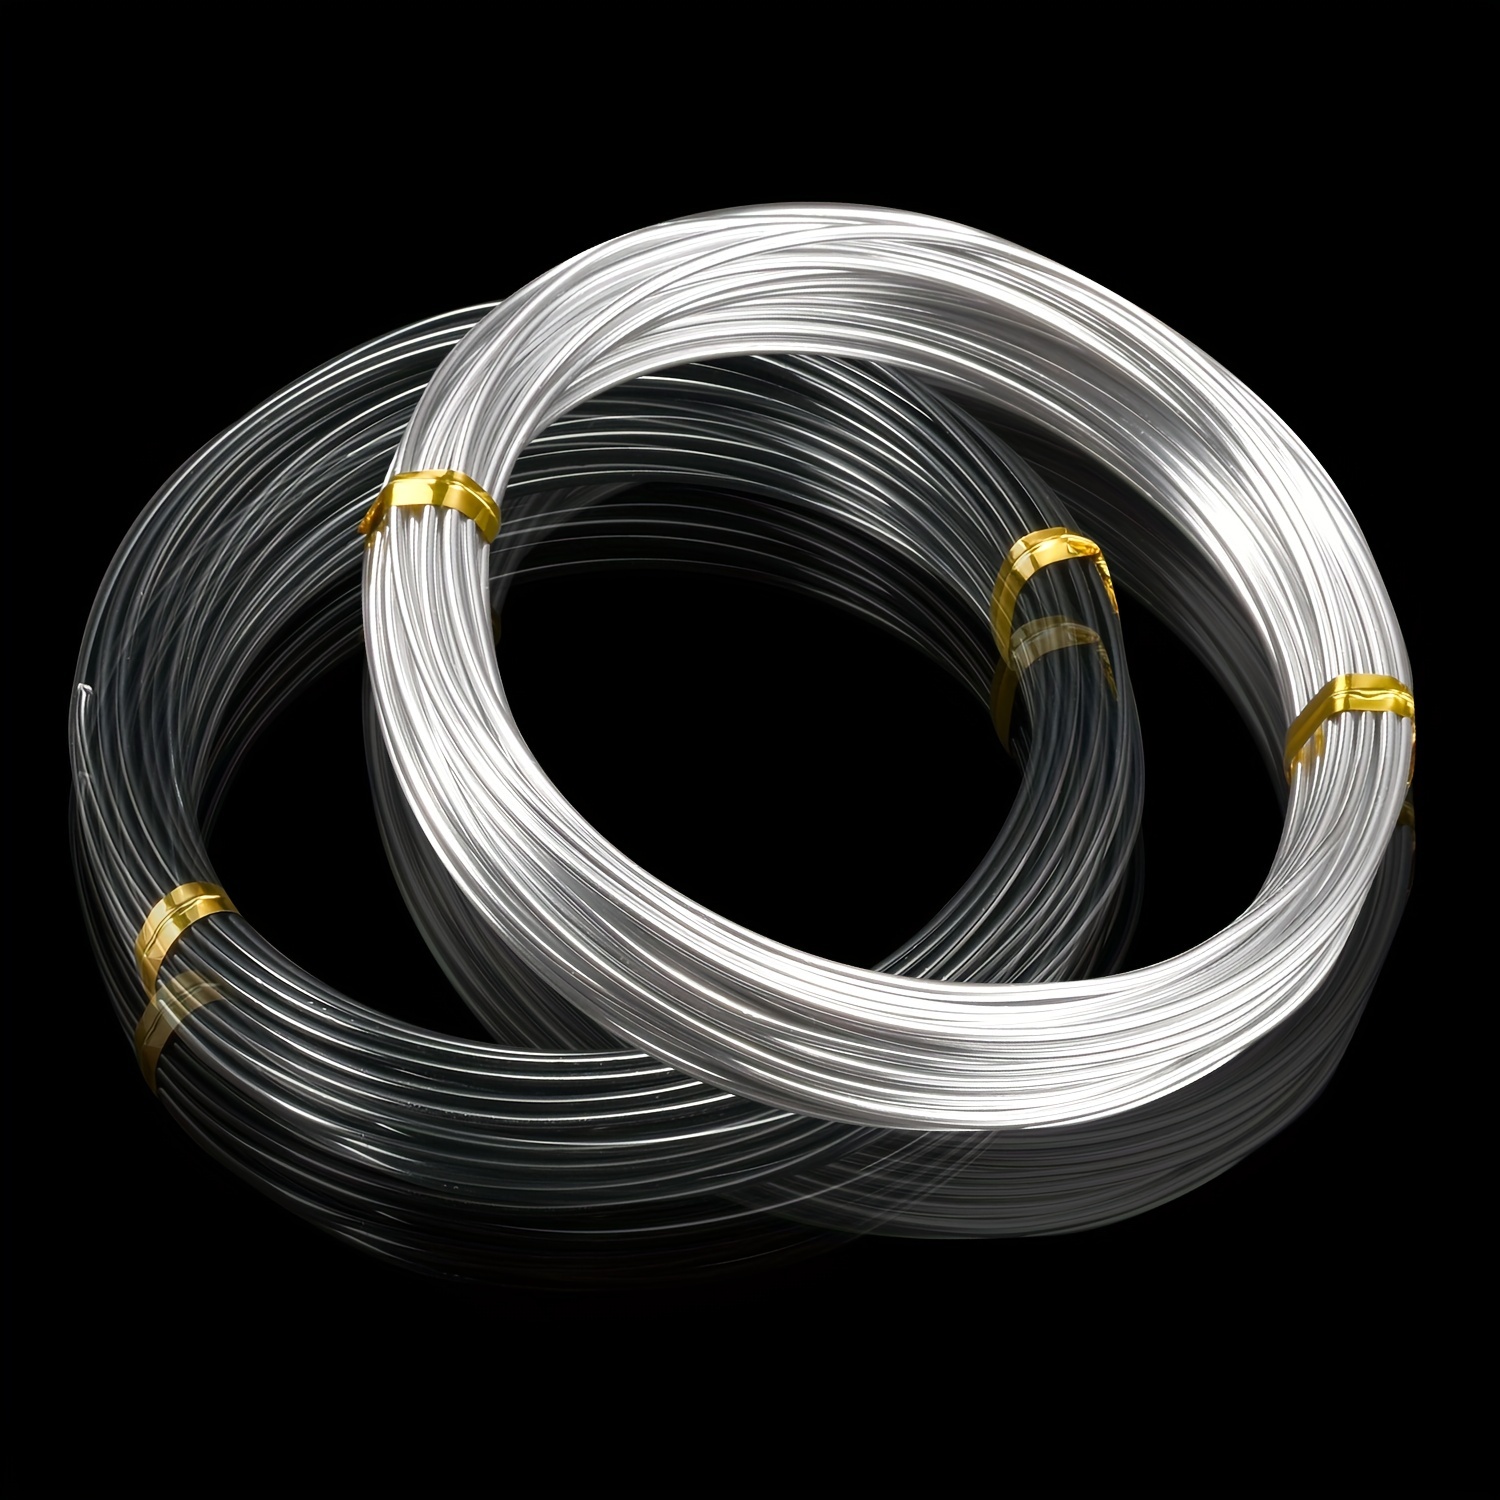 32.8ft Aluminum Wire, Jewelry Wire Craft Wire 3mm 9 Gauge Wire, Black